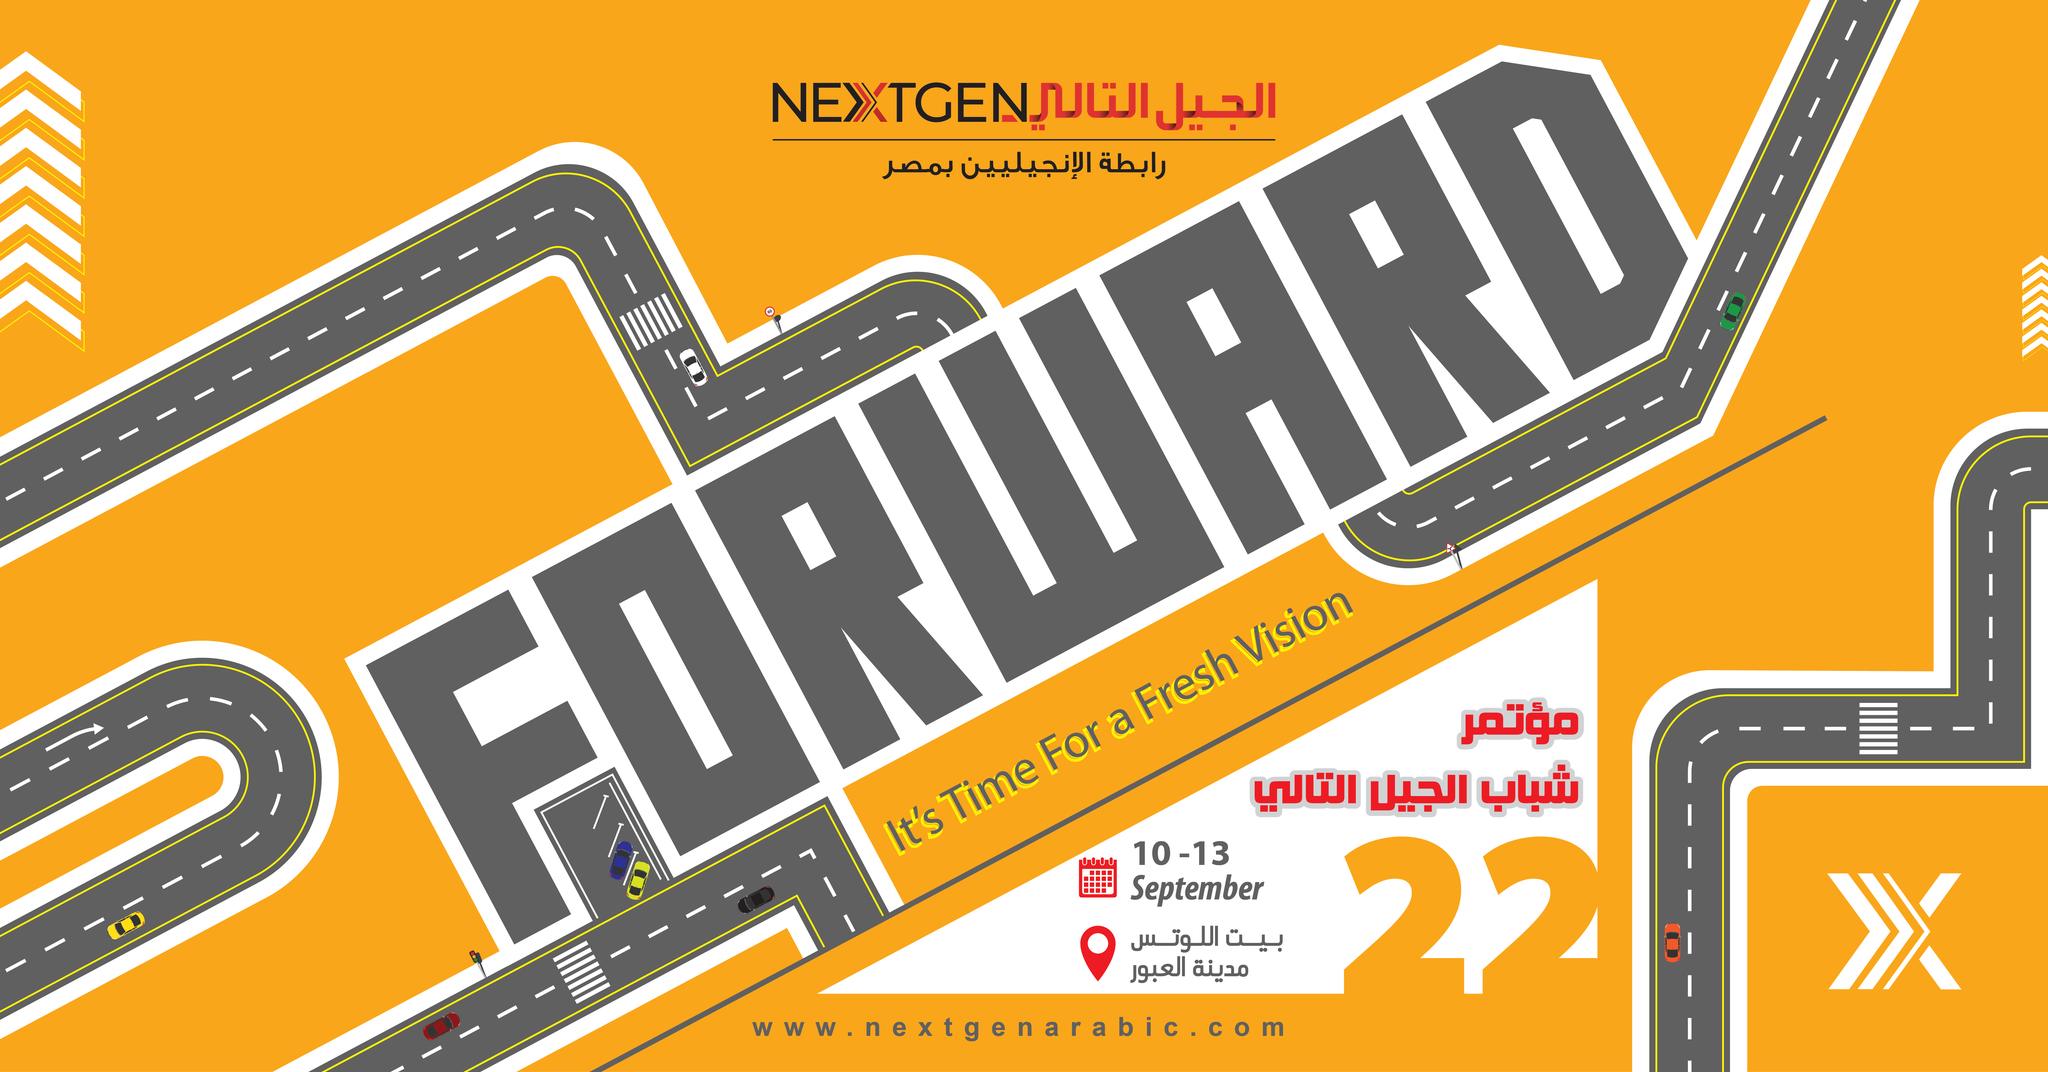 Forward: مؤتمر شباب الجيل التالي مصر